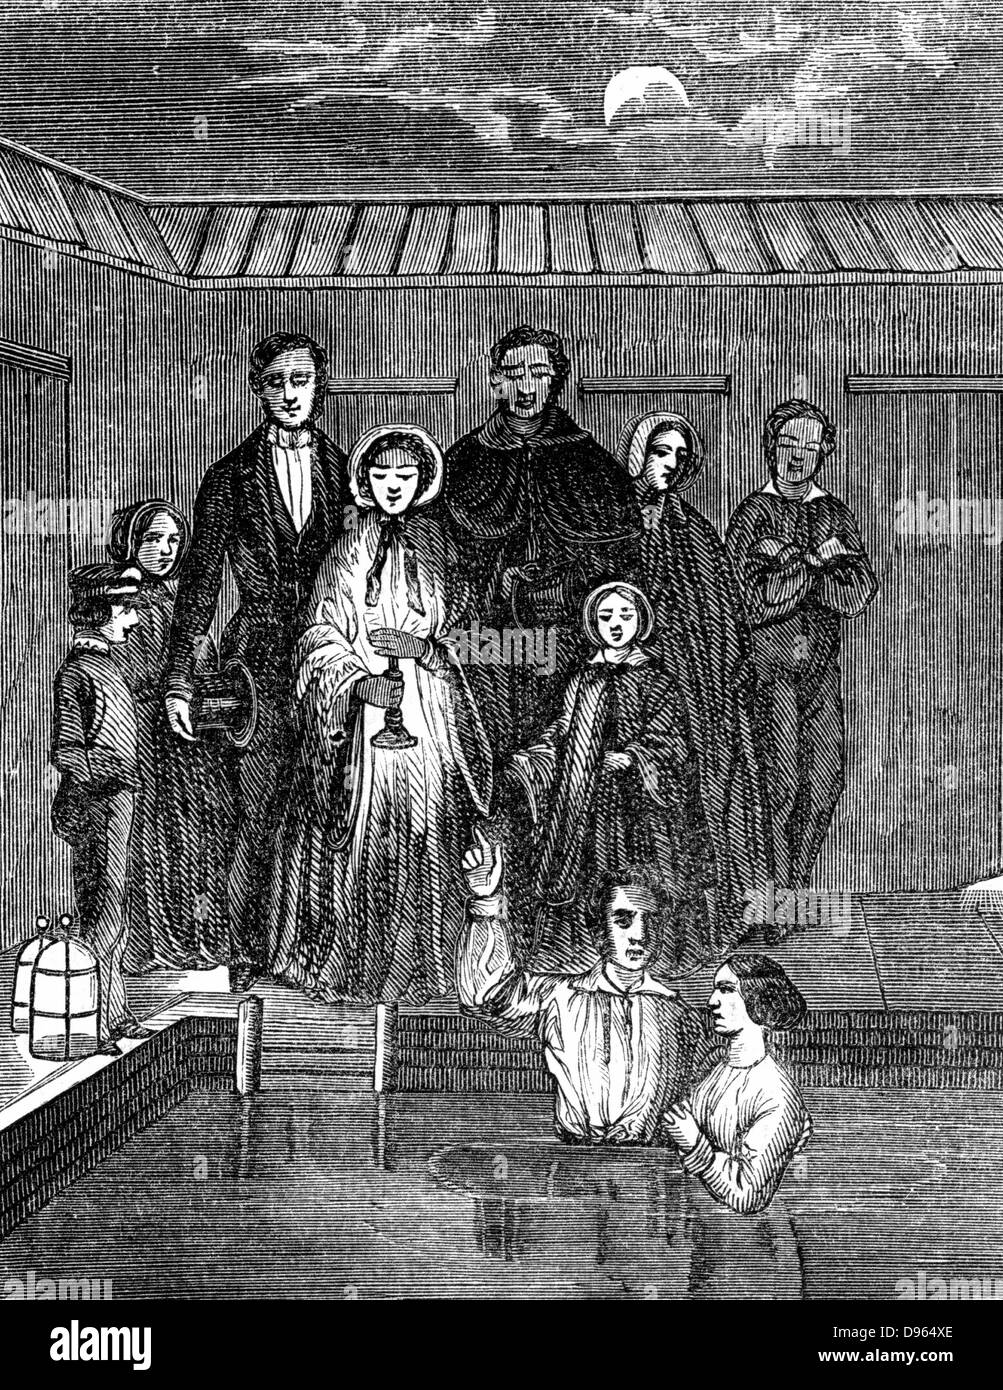 Mormonen (Latter Day Saints). Die Taufe durch völliges Eintauchen, Salt Lake City, Utah. Von "Illustration" (Paris 1853). Holzstich. Stockfoto